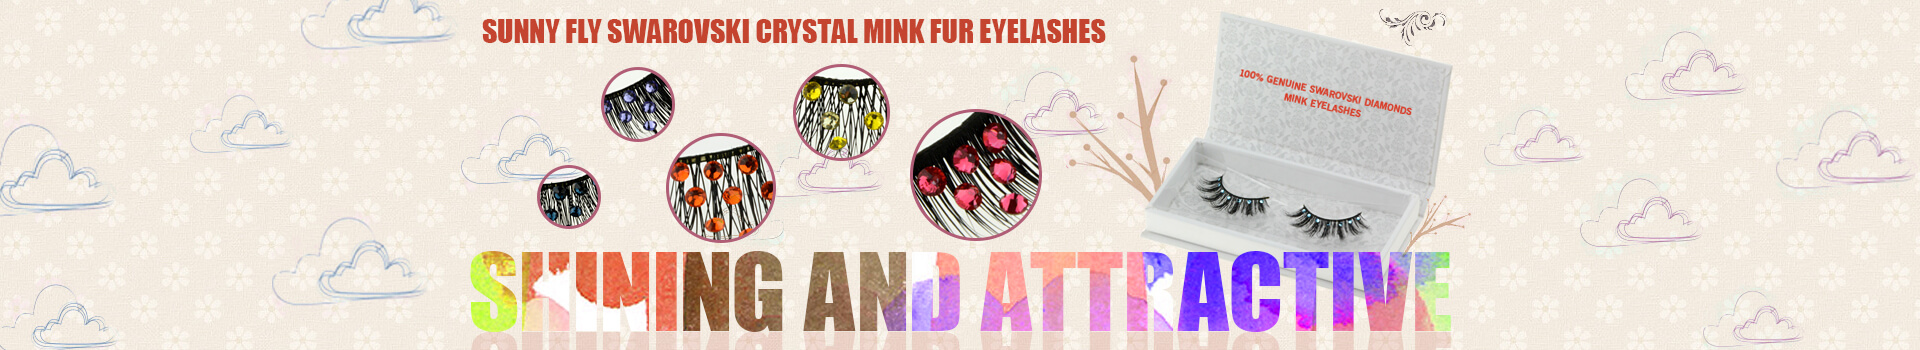 Swarovski Crystal Mink Fur Eyelashes MS32